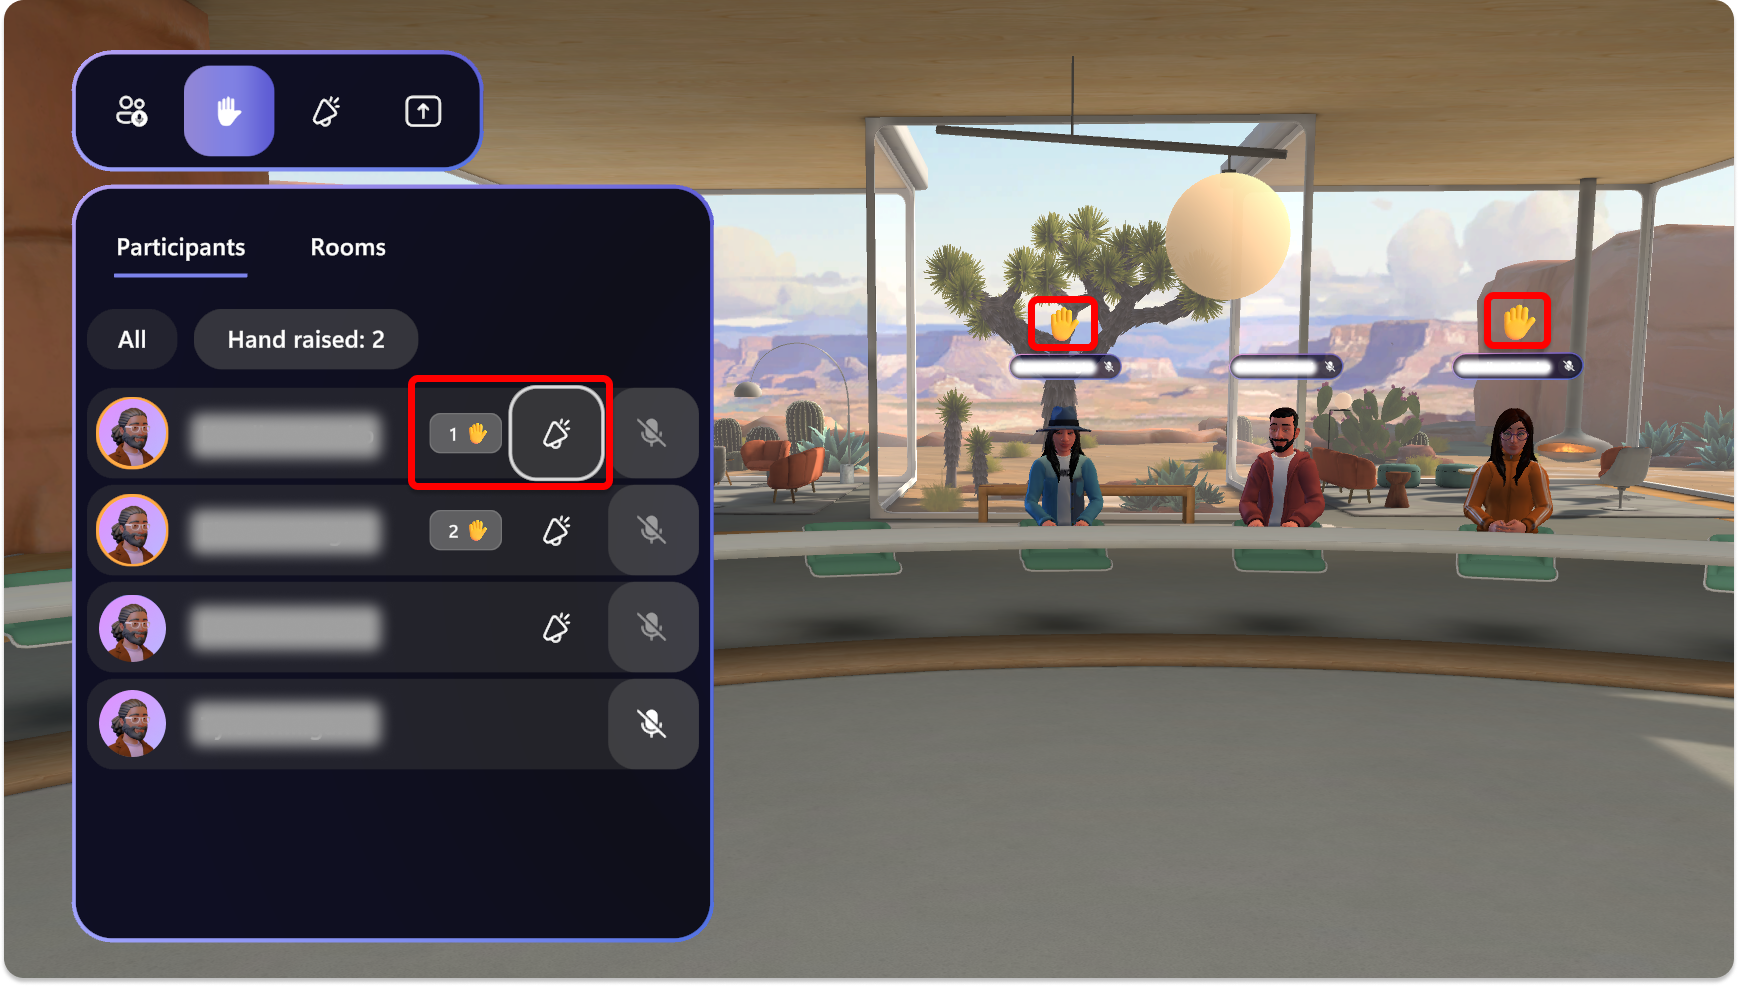 Captura de pantalla de la aplicación Mesh en la que se muestra una notificación de elevación manual junto a nombres de participantes y avatar.